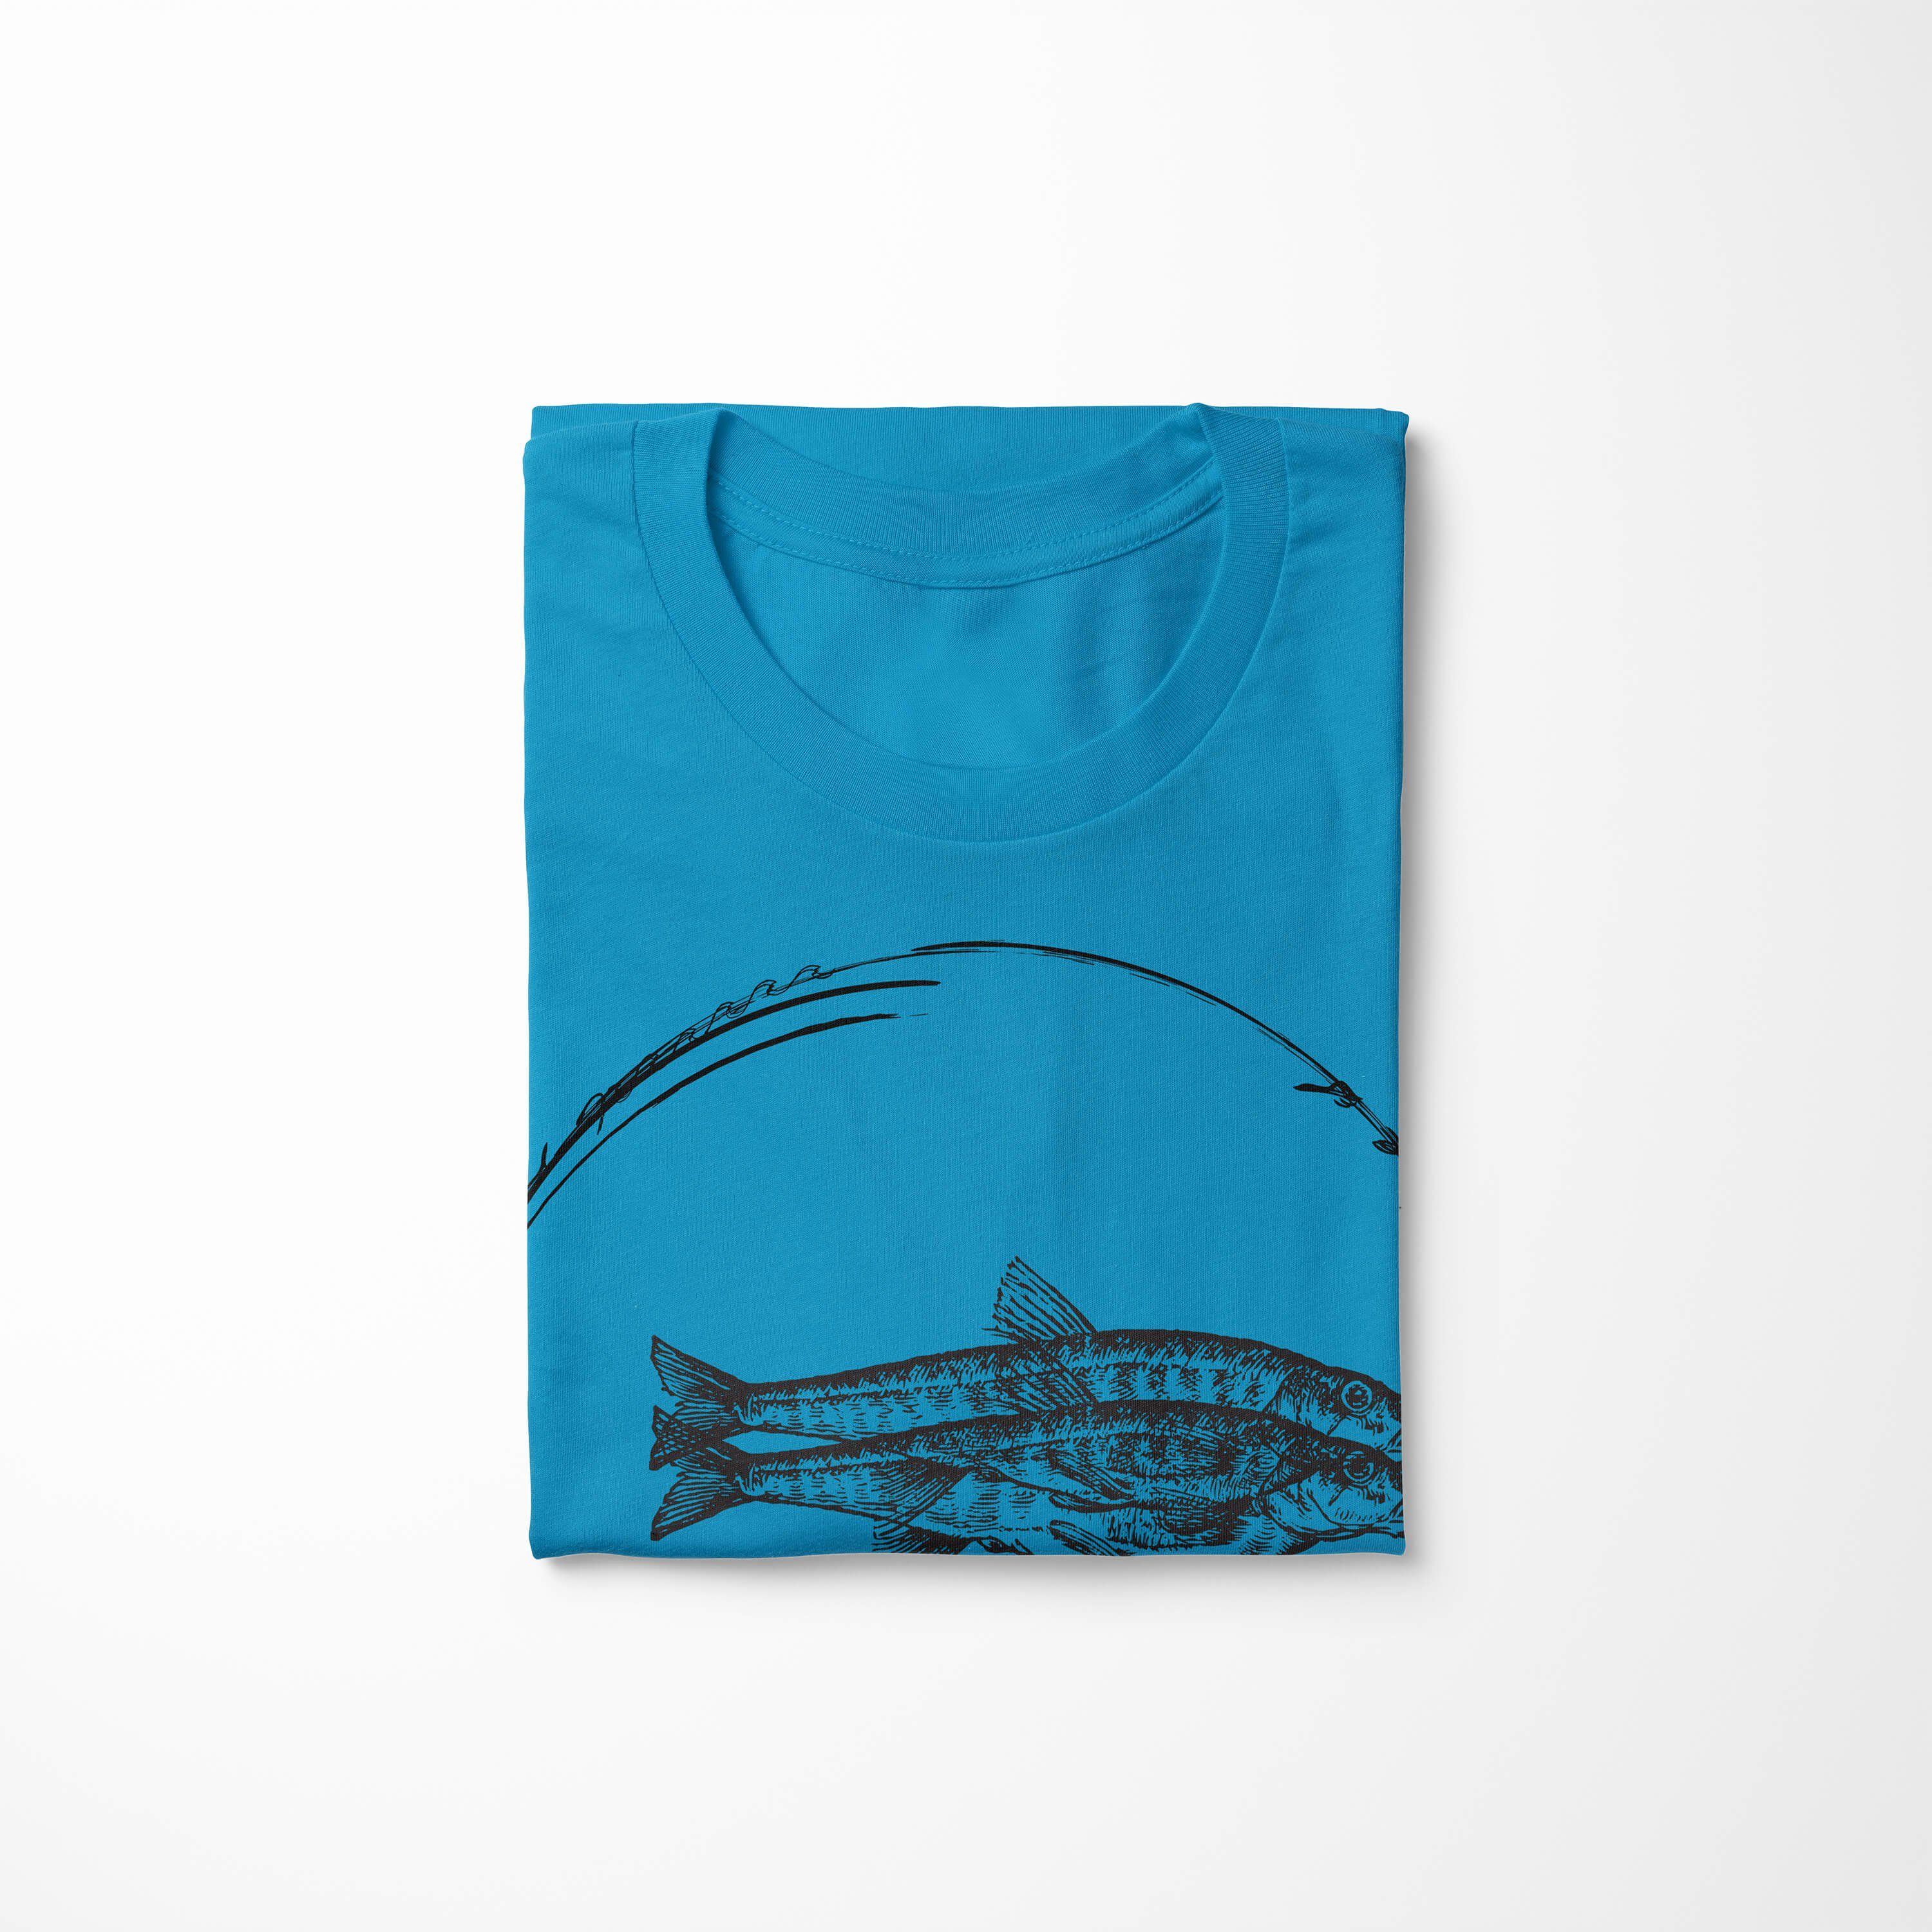 - und Sea Sea / Serie: Struktur T-Shirt feine Sinus Creatures, Tiefsee 059 Atoll Schnitt Art T-Shirt Fische sportlicher